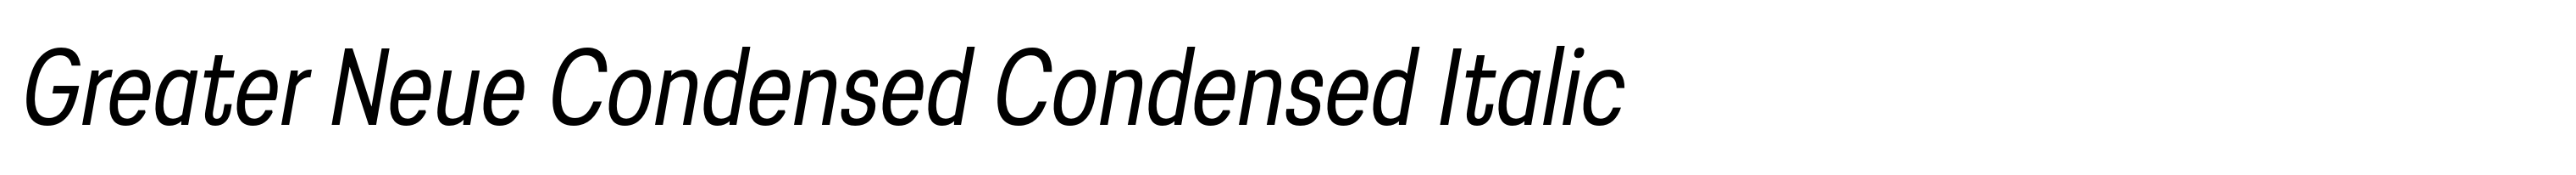 Greater Neue Condensed Condensed Italic